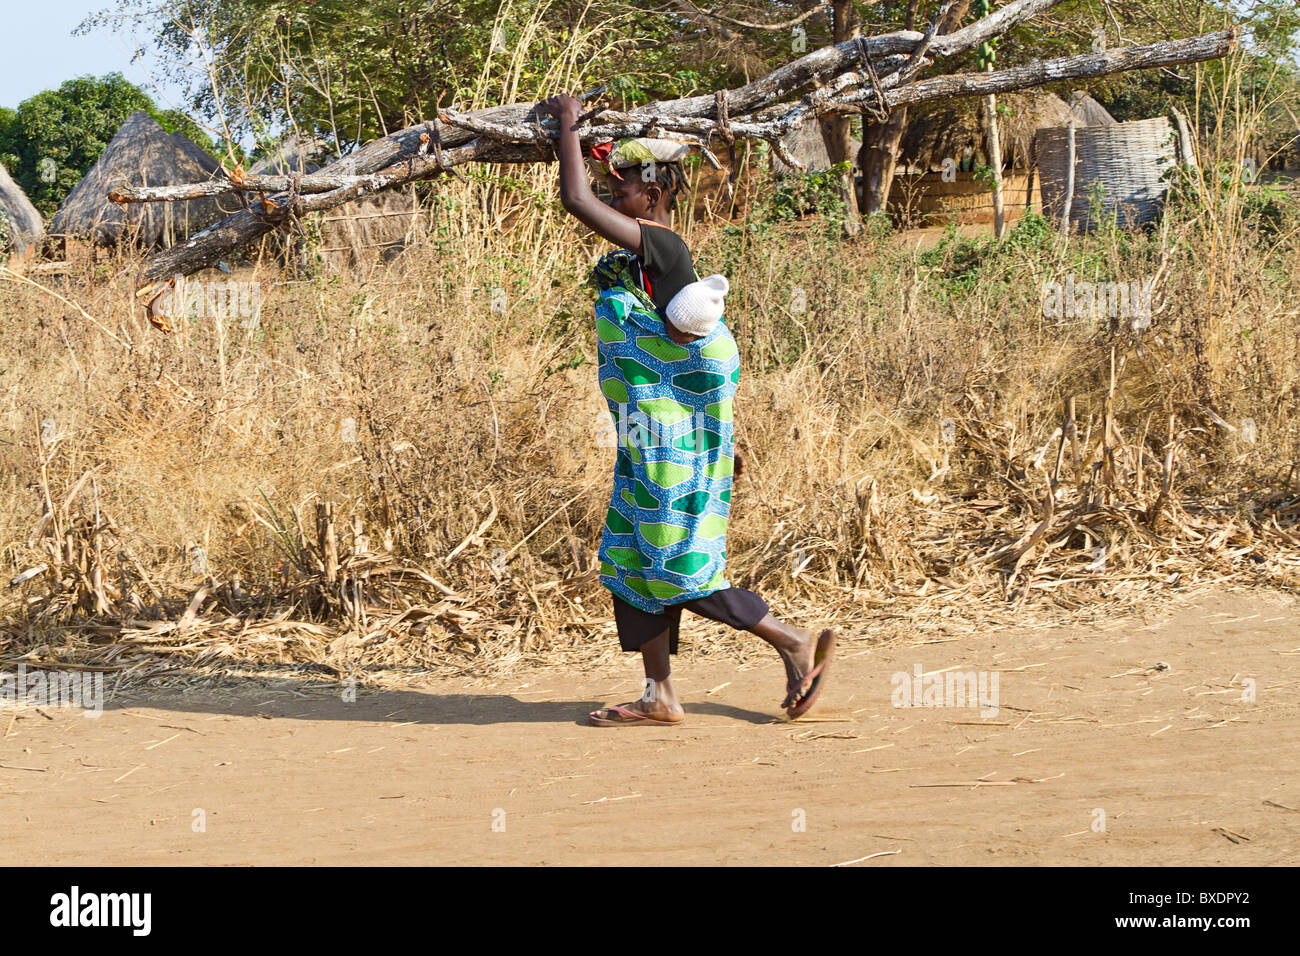 Femme porte le bois pour cuire les incendies dans son village, Kawaza, la Zambie, l'Afrique. Ces femmes sont de la tribu Kunda. Banque D'Images